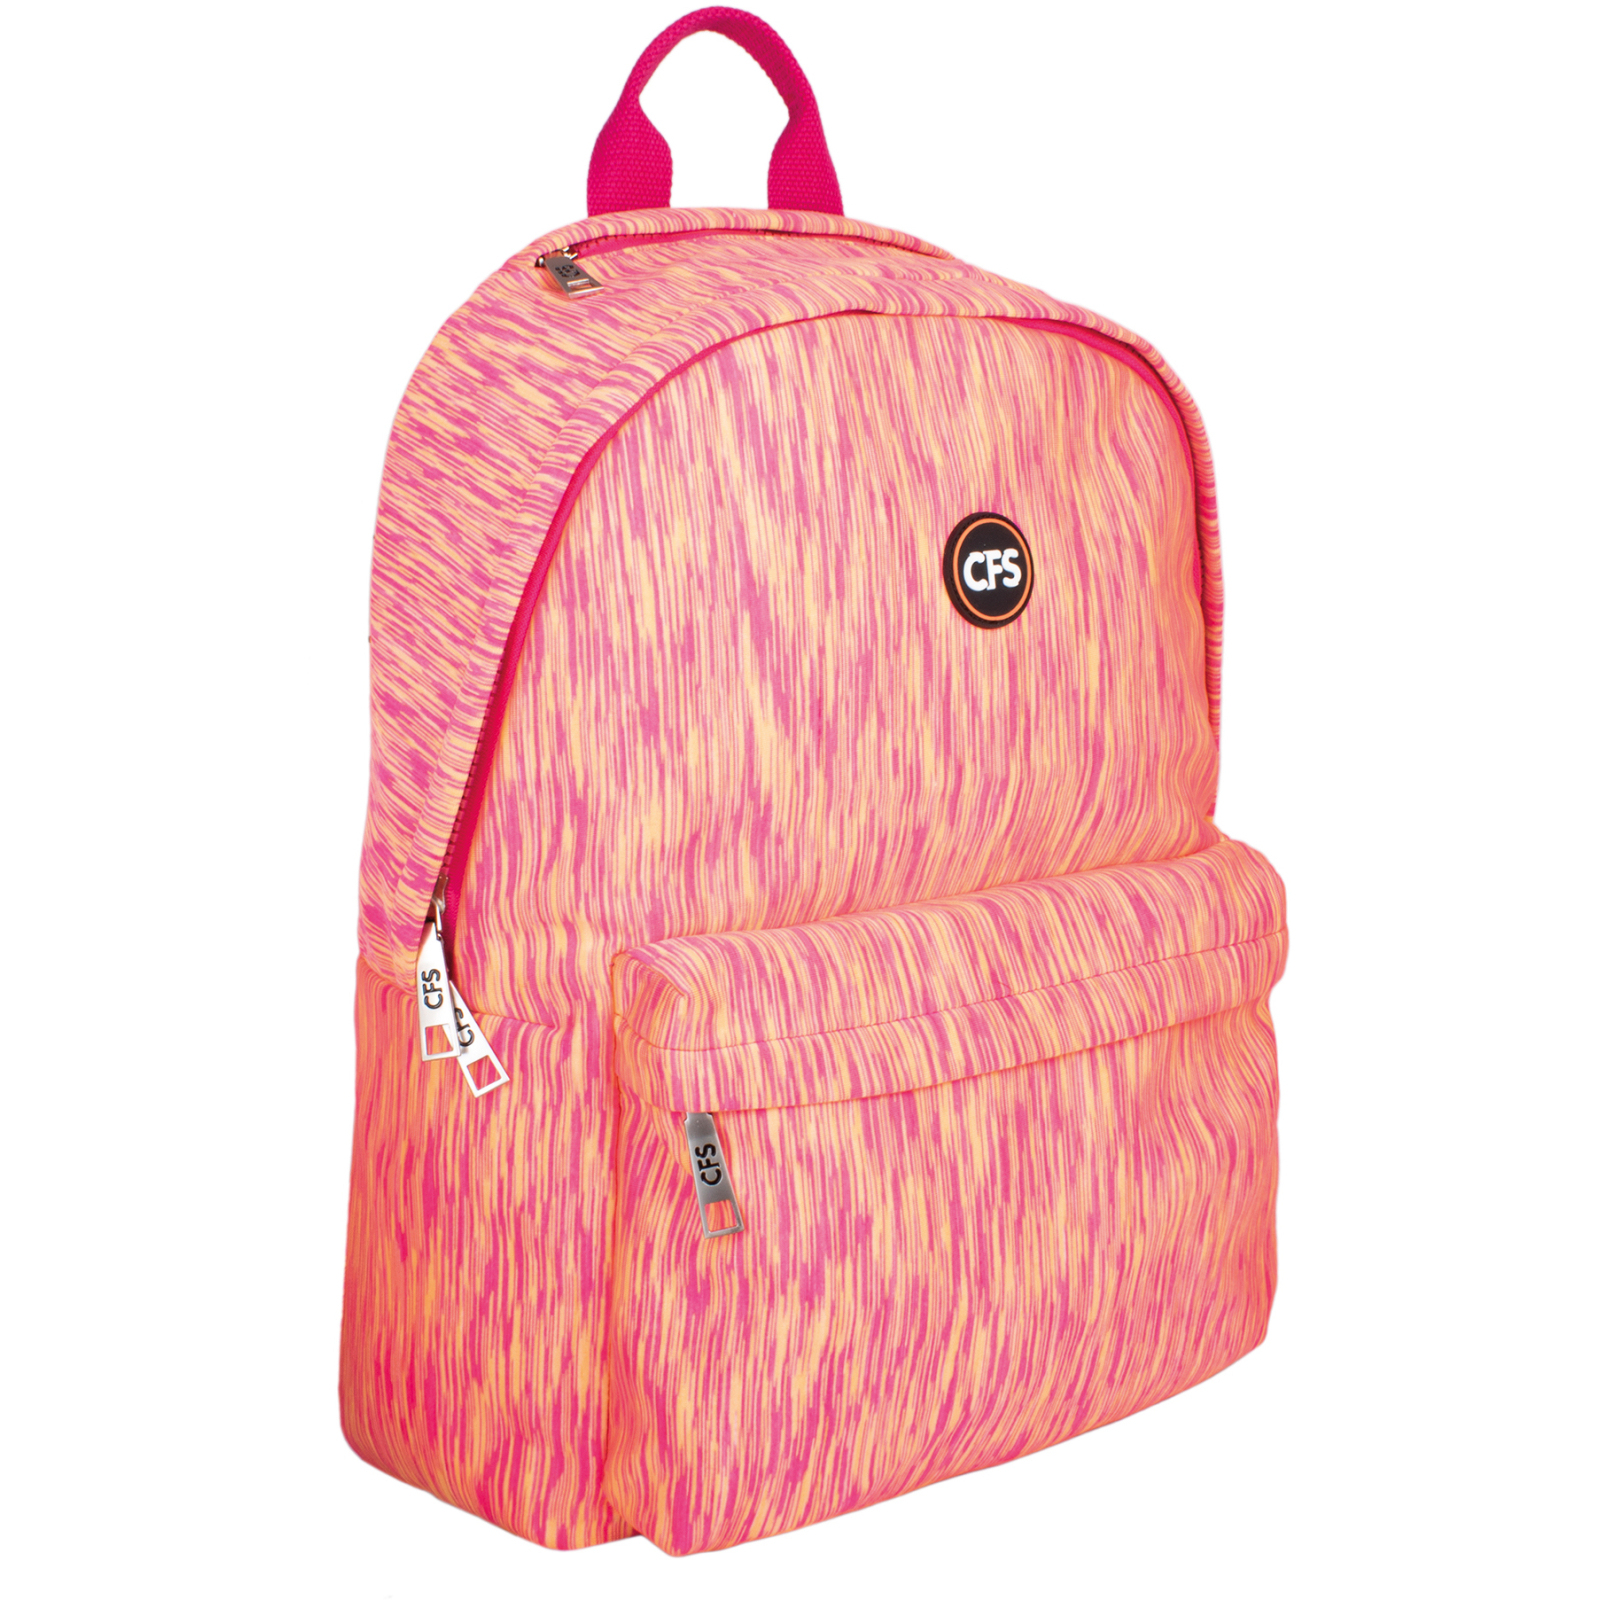 Рюкзак школьный Cool For School 42*30*16 см персиковый (CF86270)